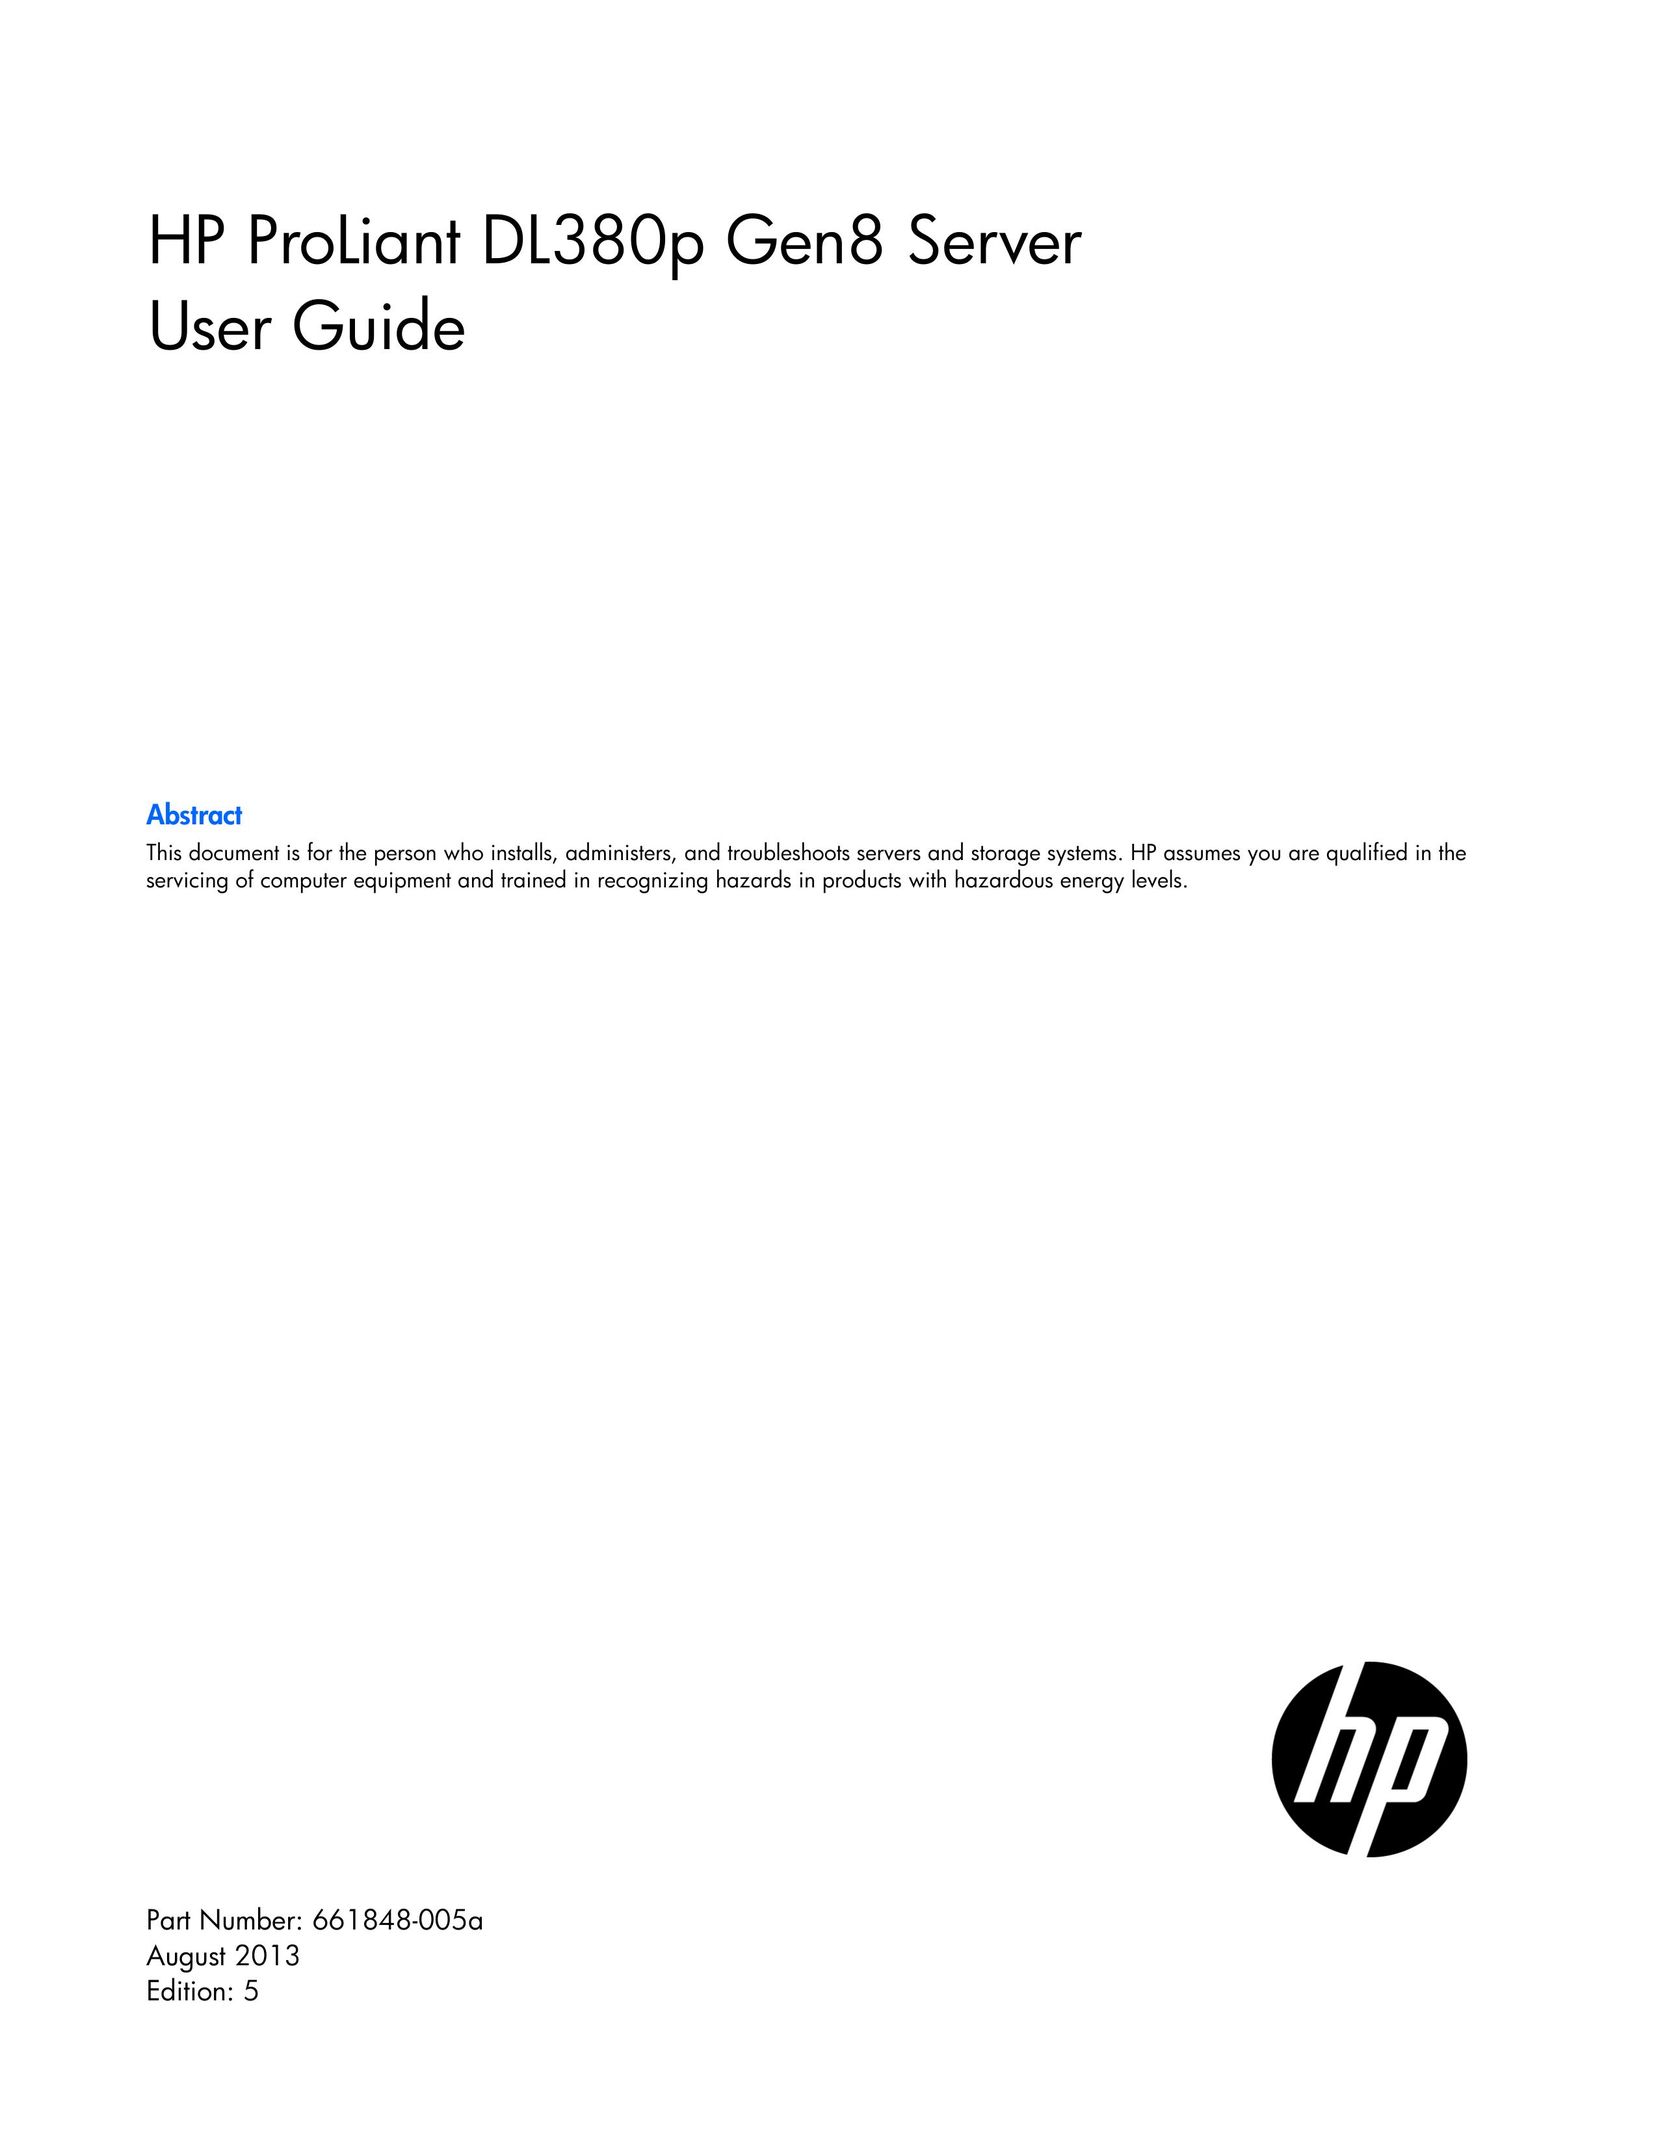 HP (Hewlett-Packard) 642106-001 Server User Manual